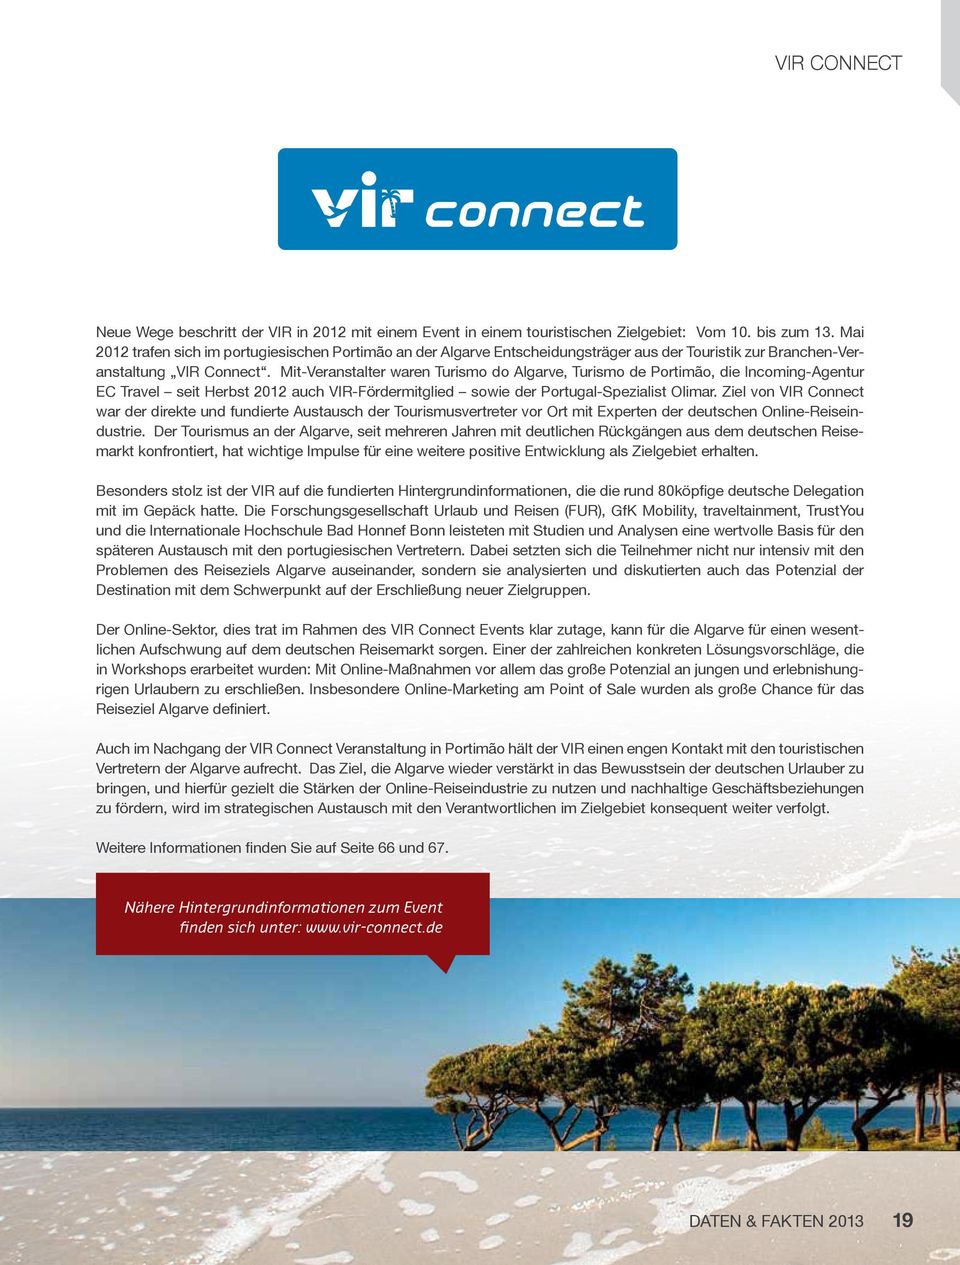 Mit-Veranstalter waren Turismo do Algarve, Turismo de Portimão, die Incoming-Agentur EC Travel seit Herbst 2012 auch VIR-Fördermitglied sowie der Portugal-Spezialist Olimar.